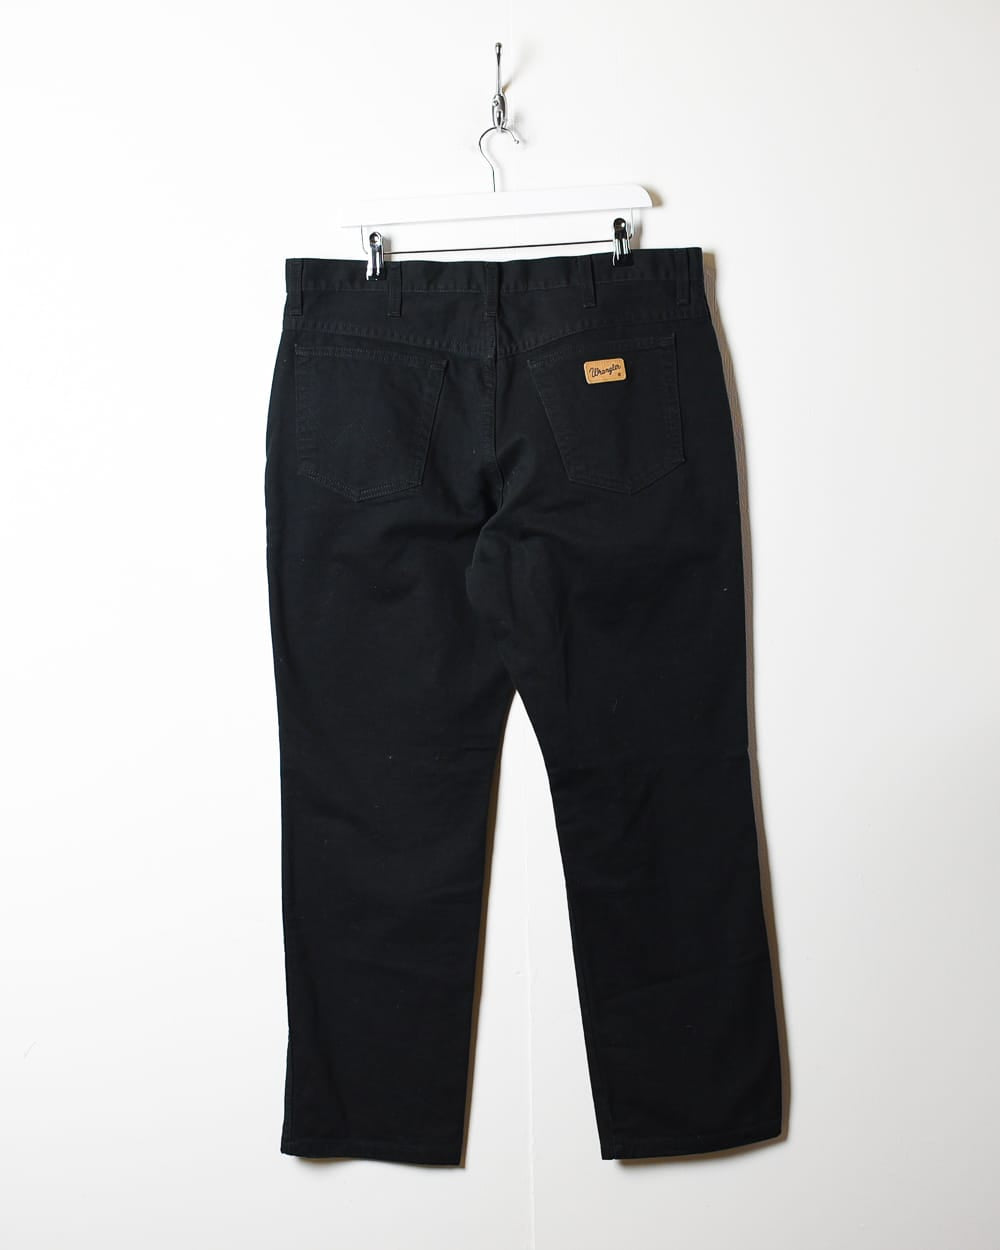 Black Wrangler Jeans - W38 L30